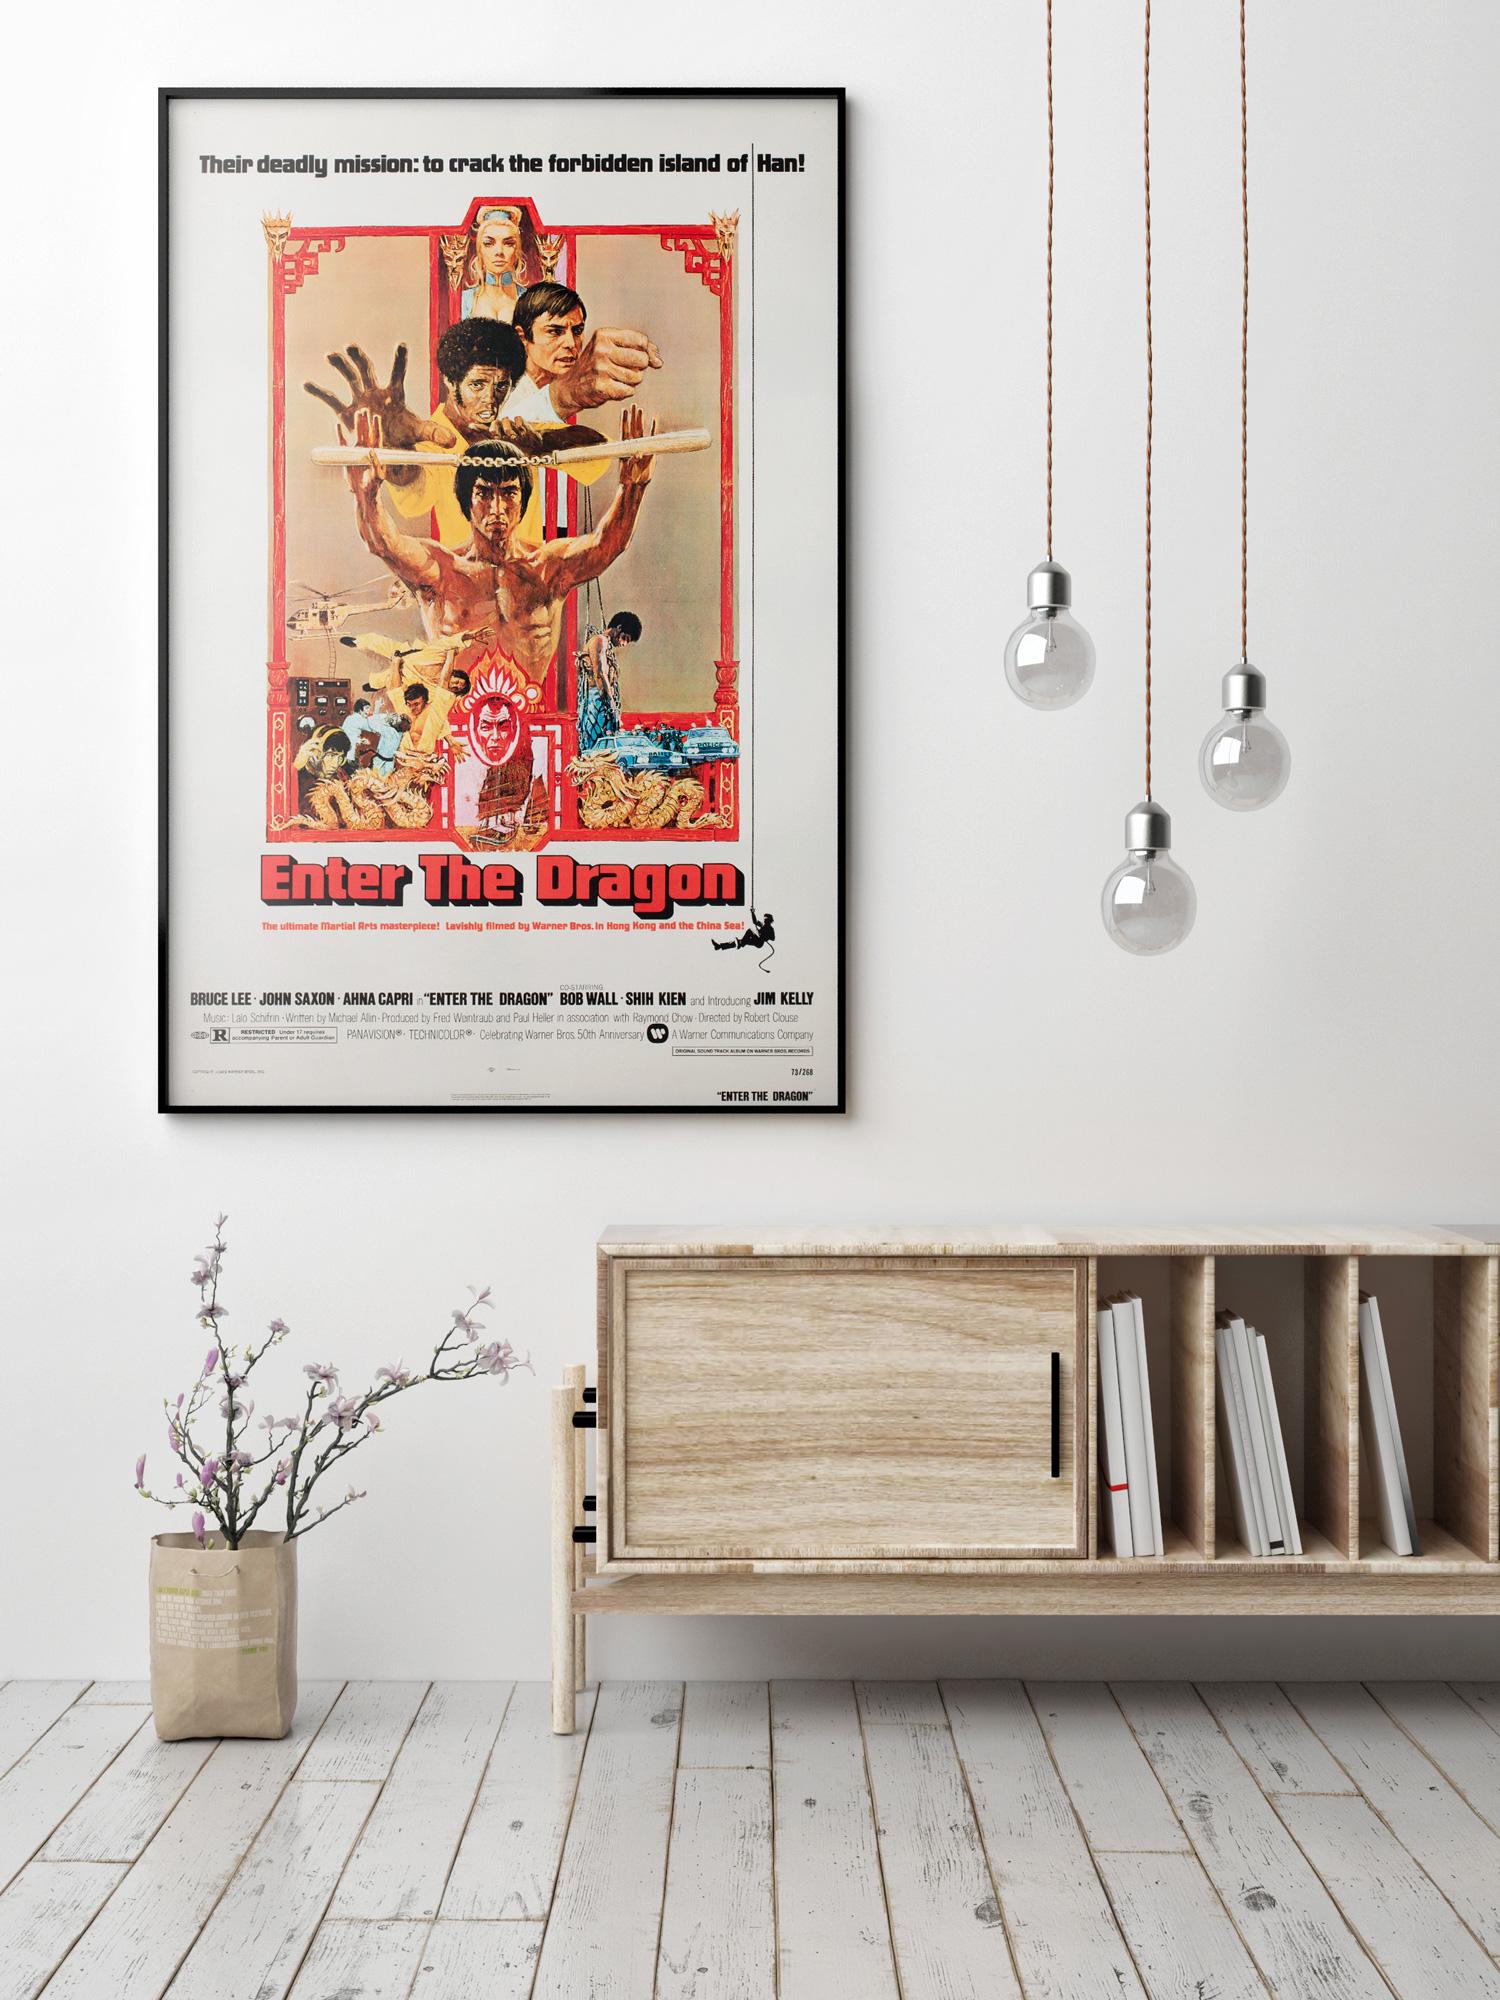 Un design fantastique de Bob Peak figure sur cette affiche originale américaine à 1 feuille pour le film d'arts martiaux Enter the Dragon de Bruce Lee.

Cette affiche de film vintage originale a été professionnellement doublée de lin et mesure 27